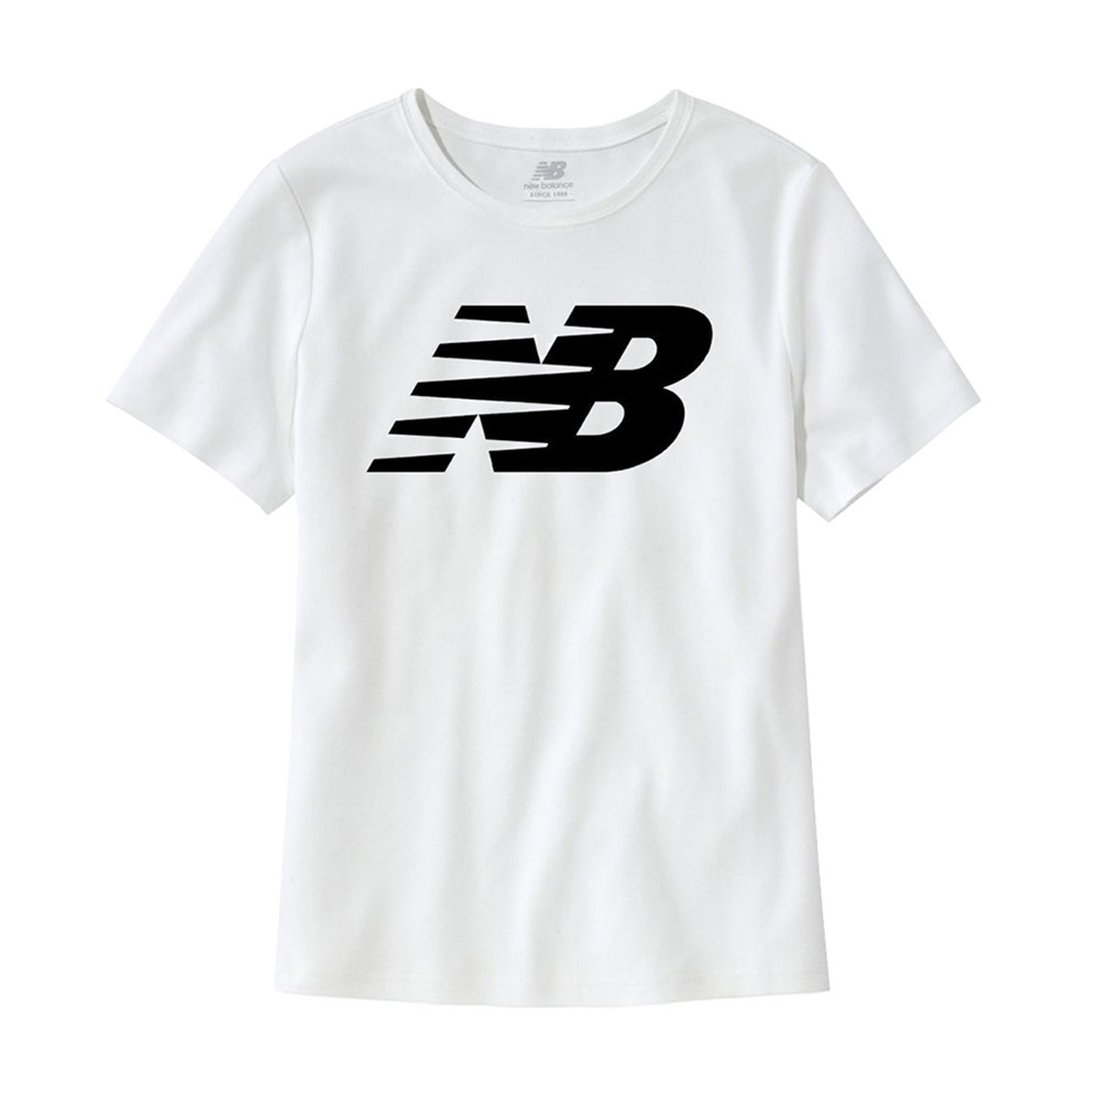 뉴발란스 Nb 클래식 플라잉 그래픽 로고 여성 반팔 티셔츠 화이트 Wt03816-Wt, 신세계적 쇼핑포털 Ssg.Com